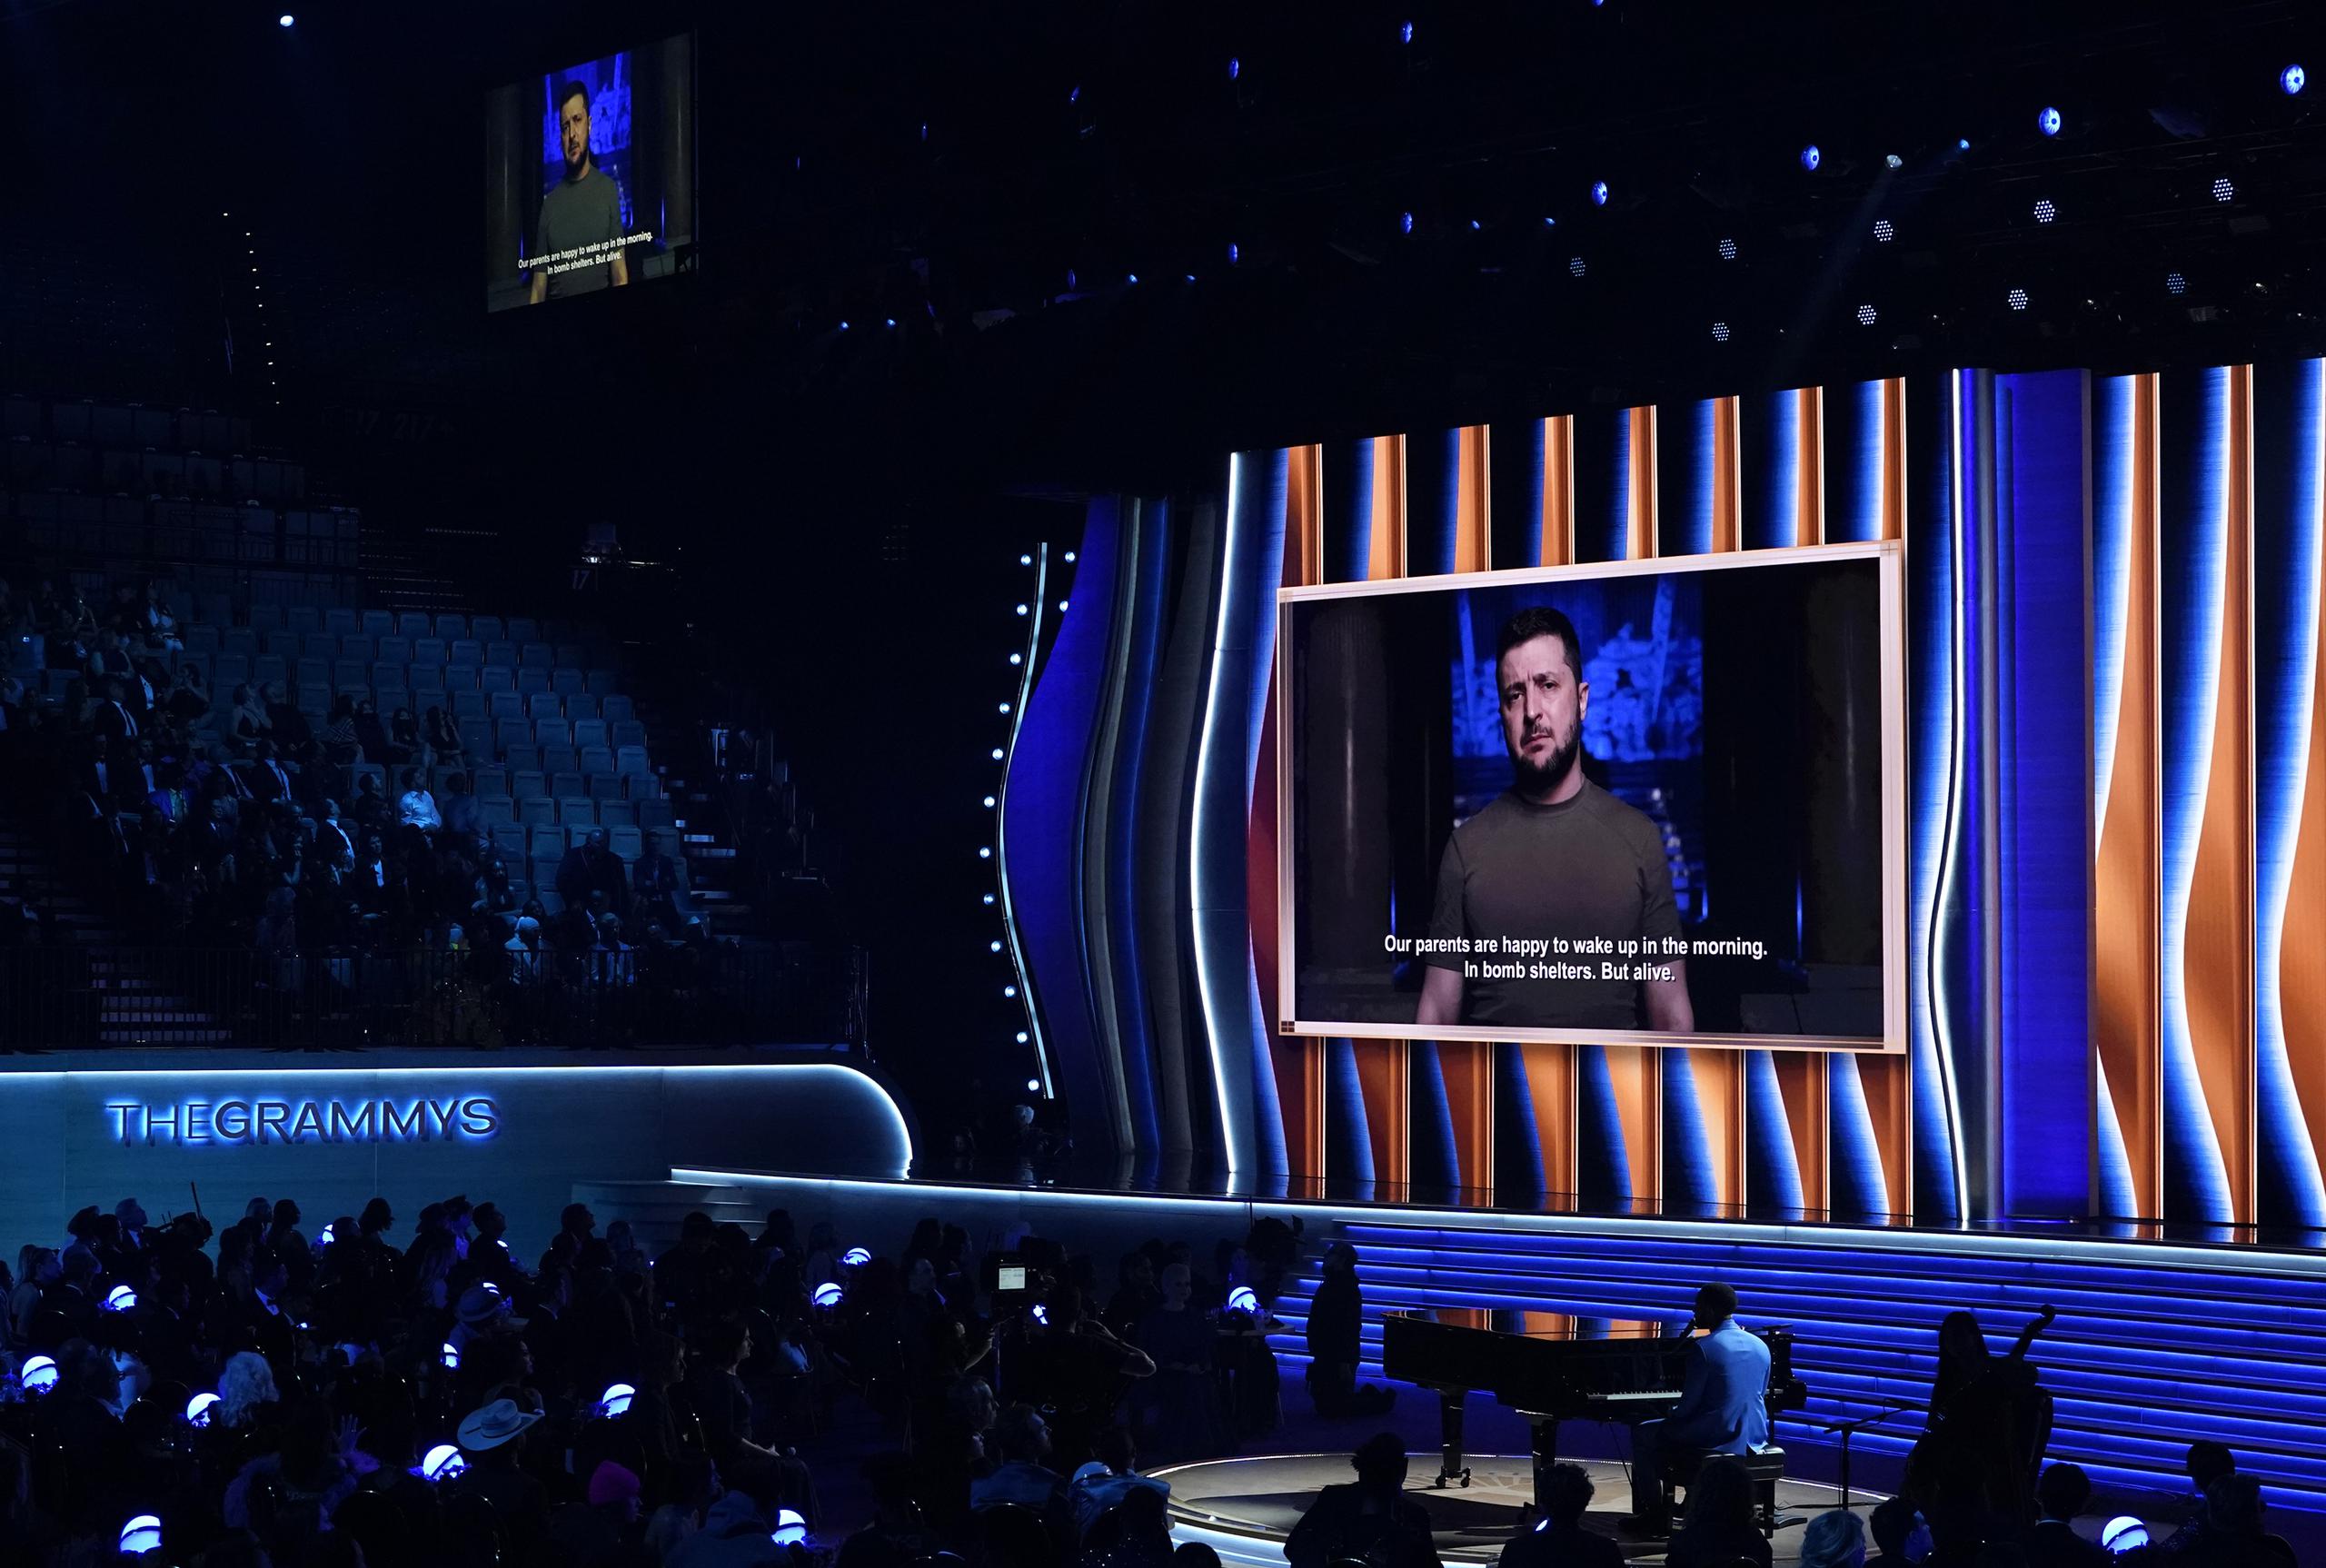 El presidente ucraniano Volodymyr Zelenskyy, en la pantalla, envía un mensaje transmitido durante la ceremonia de los premios Grammy.